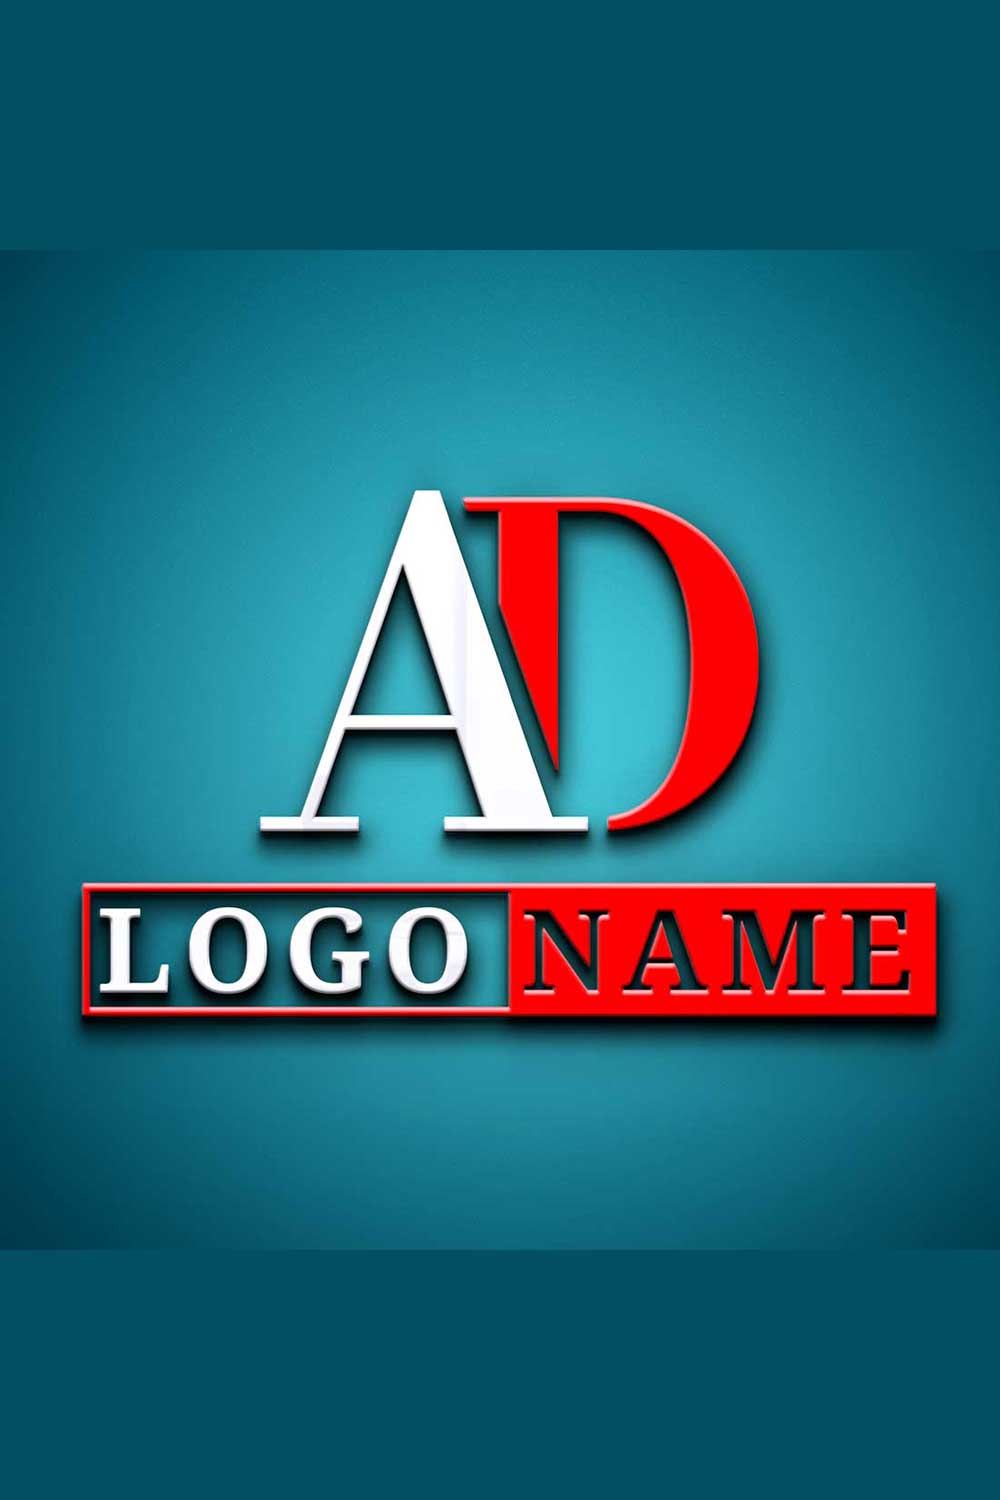 Modern (AD) Letter Logo Design in Illustrator - 100% Editable pinterest preview image.